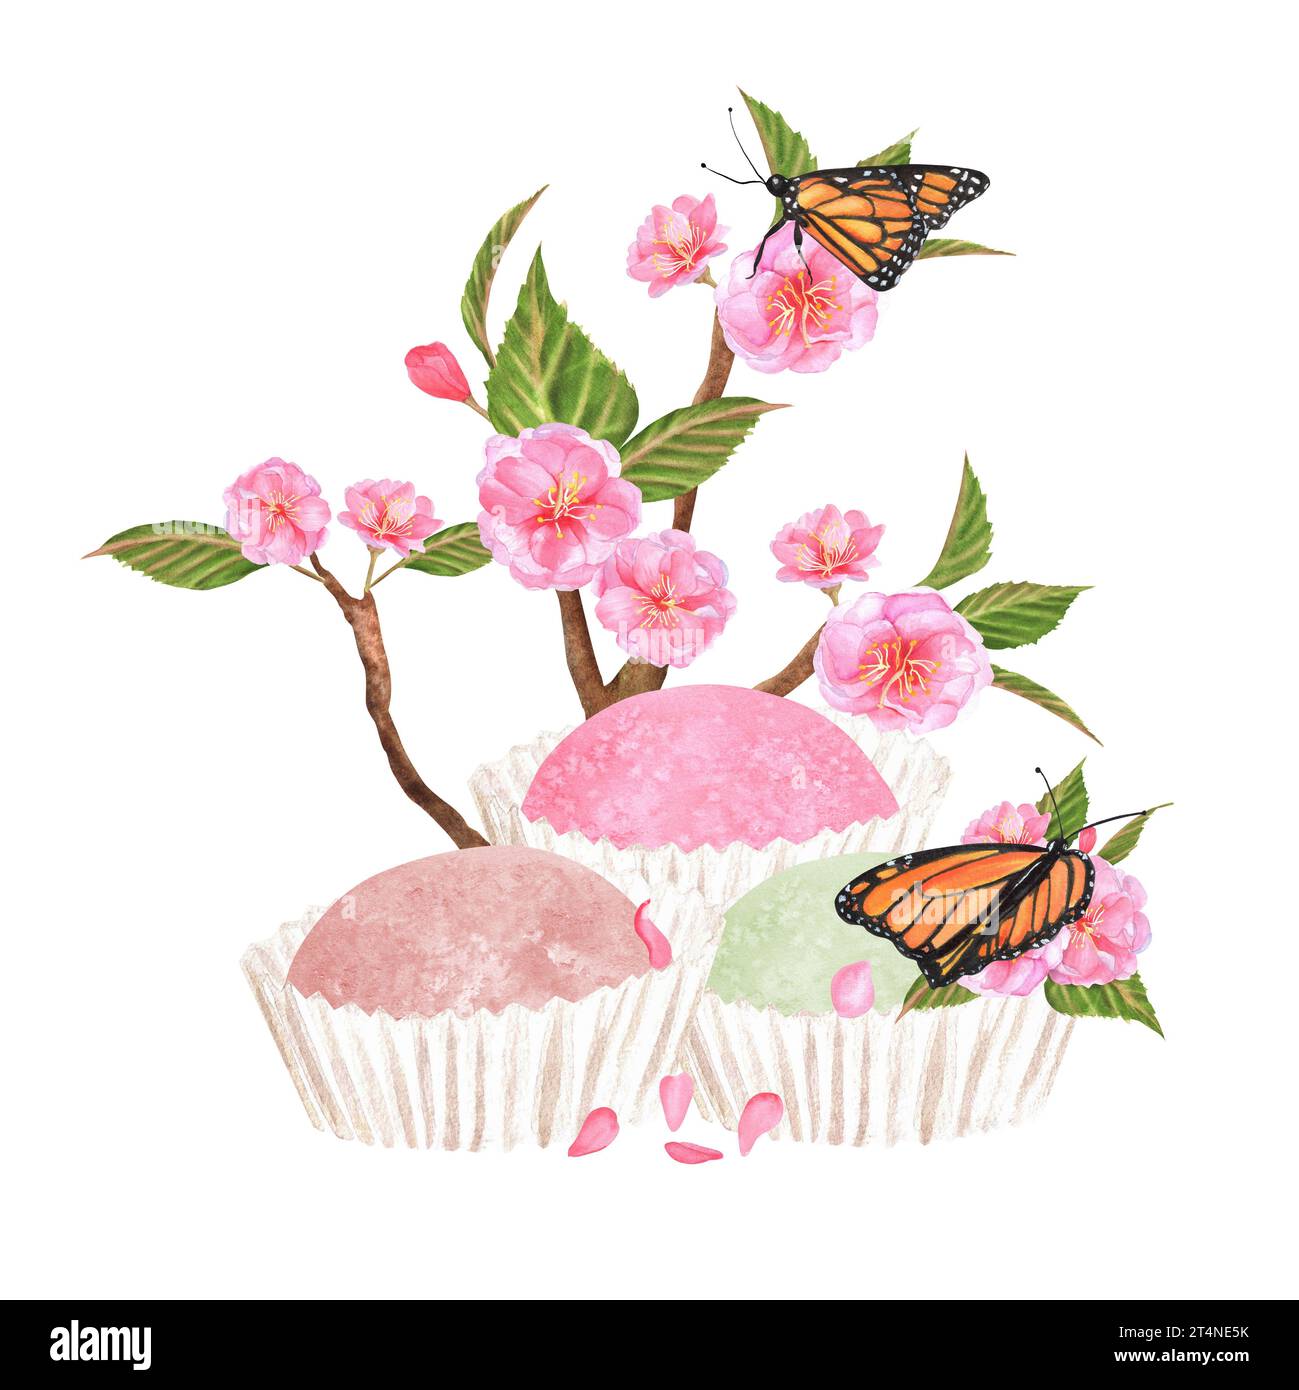 Illustration à l'aquarelle dessinée à la main. Dessert mochi sucré de couleurs rose et verte avec des branches de sakura et des papillons Banque D'Images